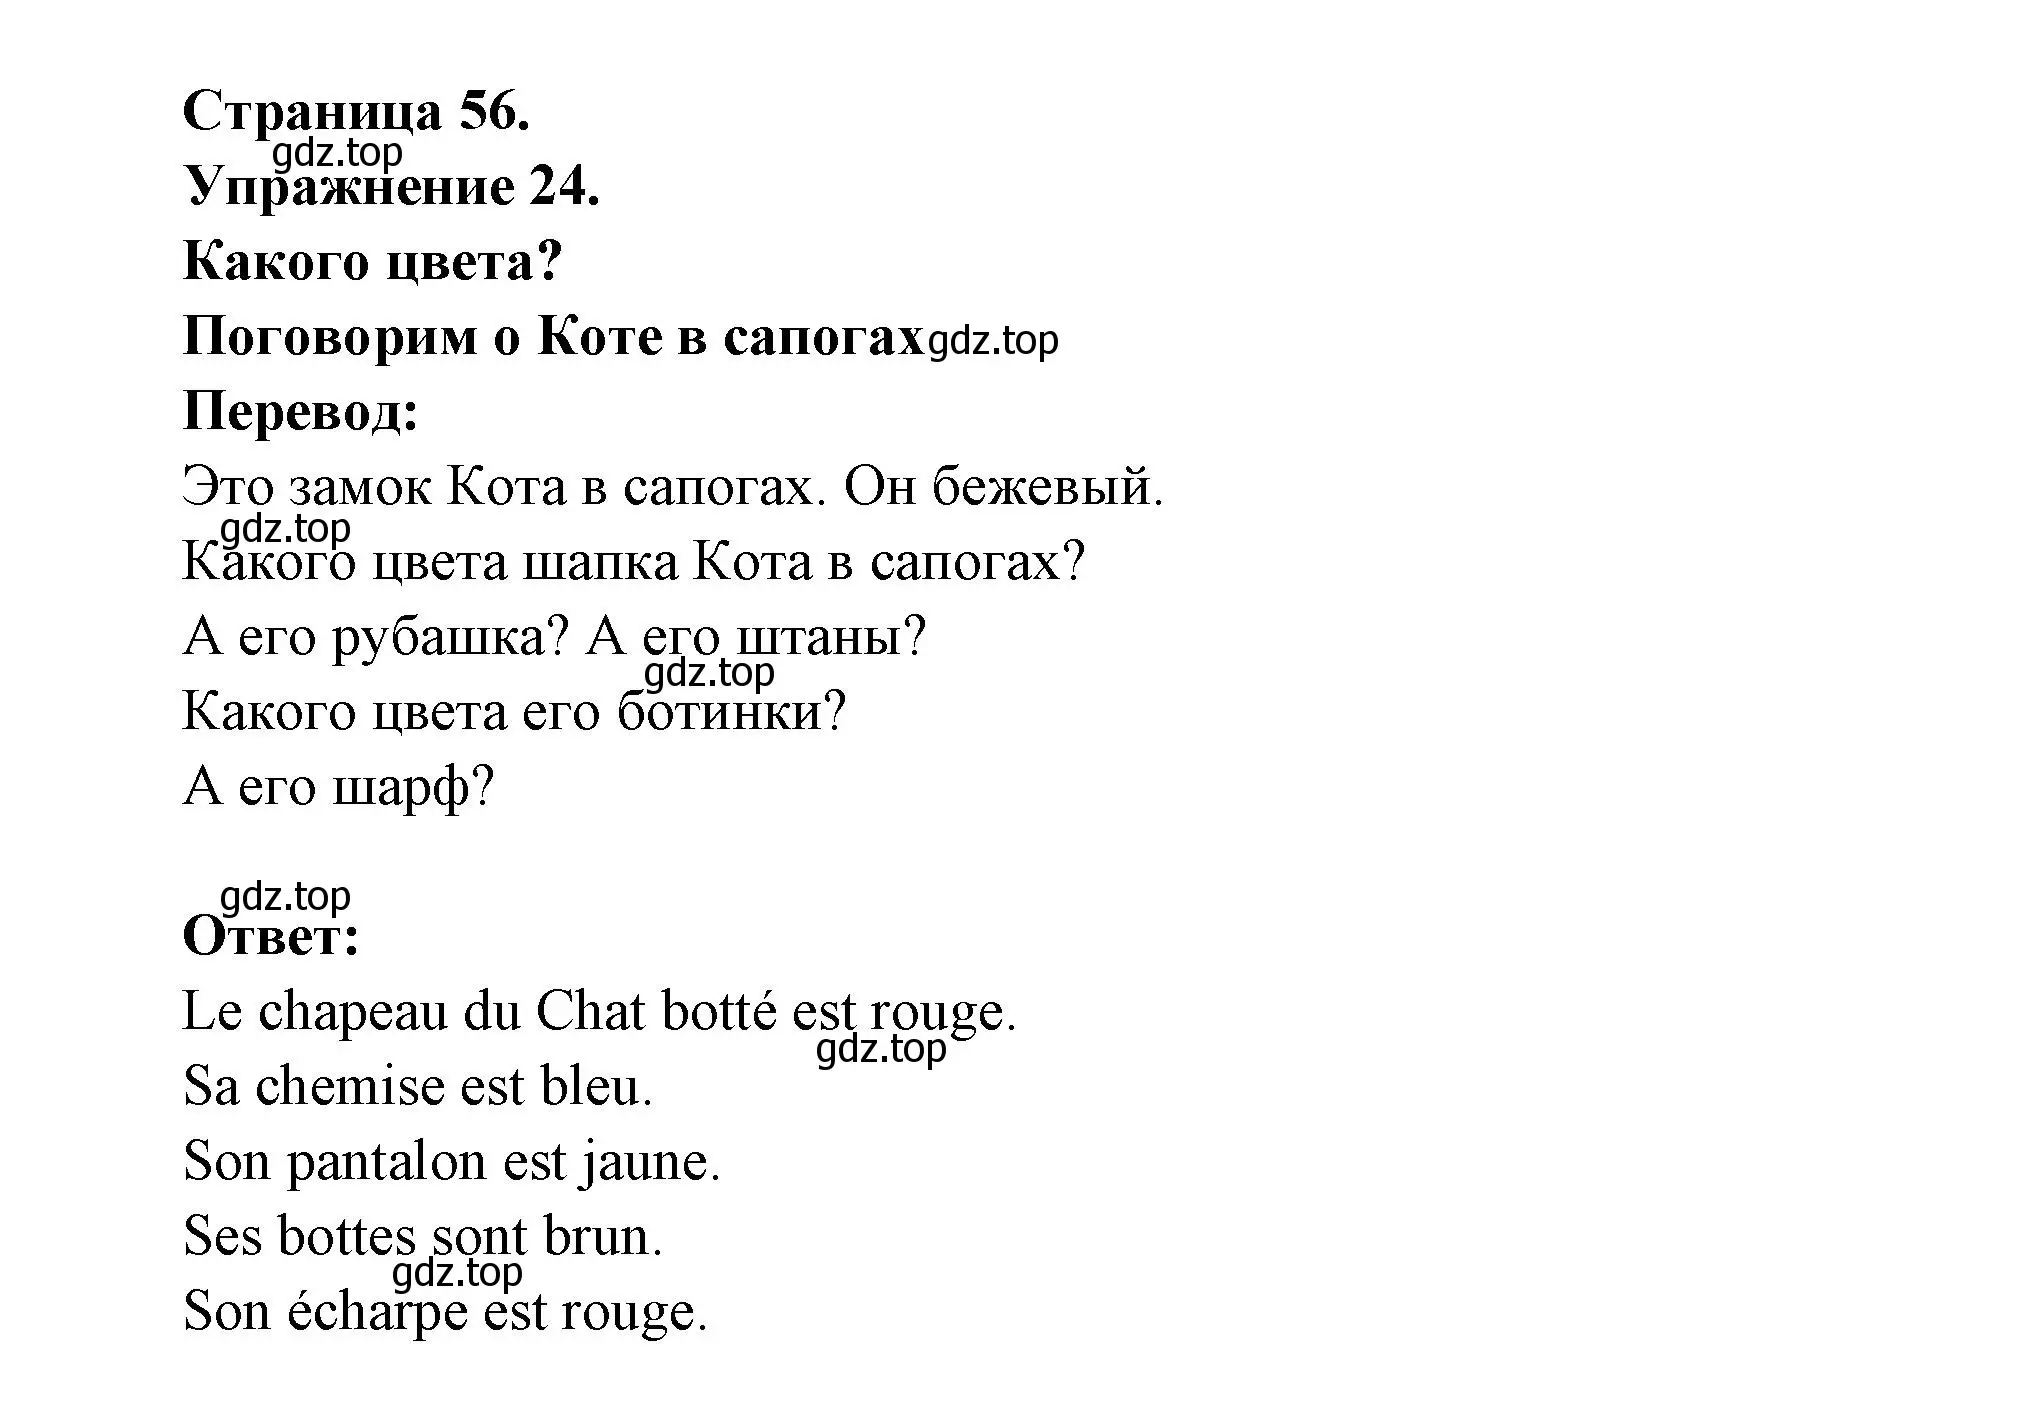 Решение номер 24 (страница 56) гдз по французскому языку 5 класс Береговская, Белосельская, учебник 1 часть